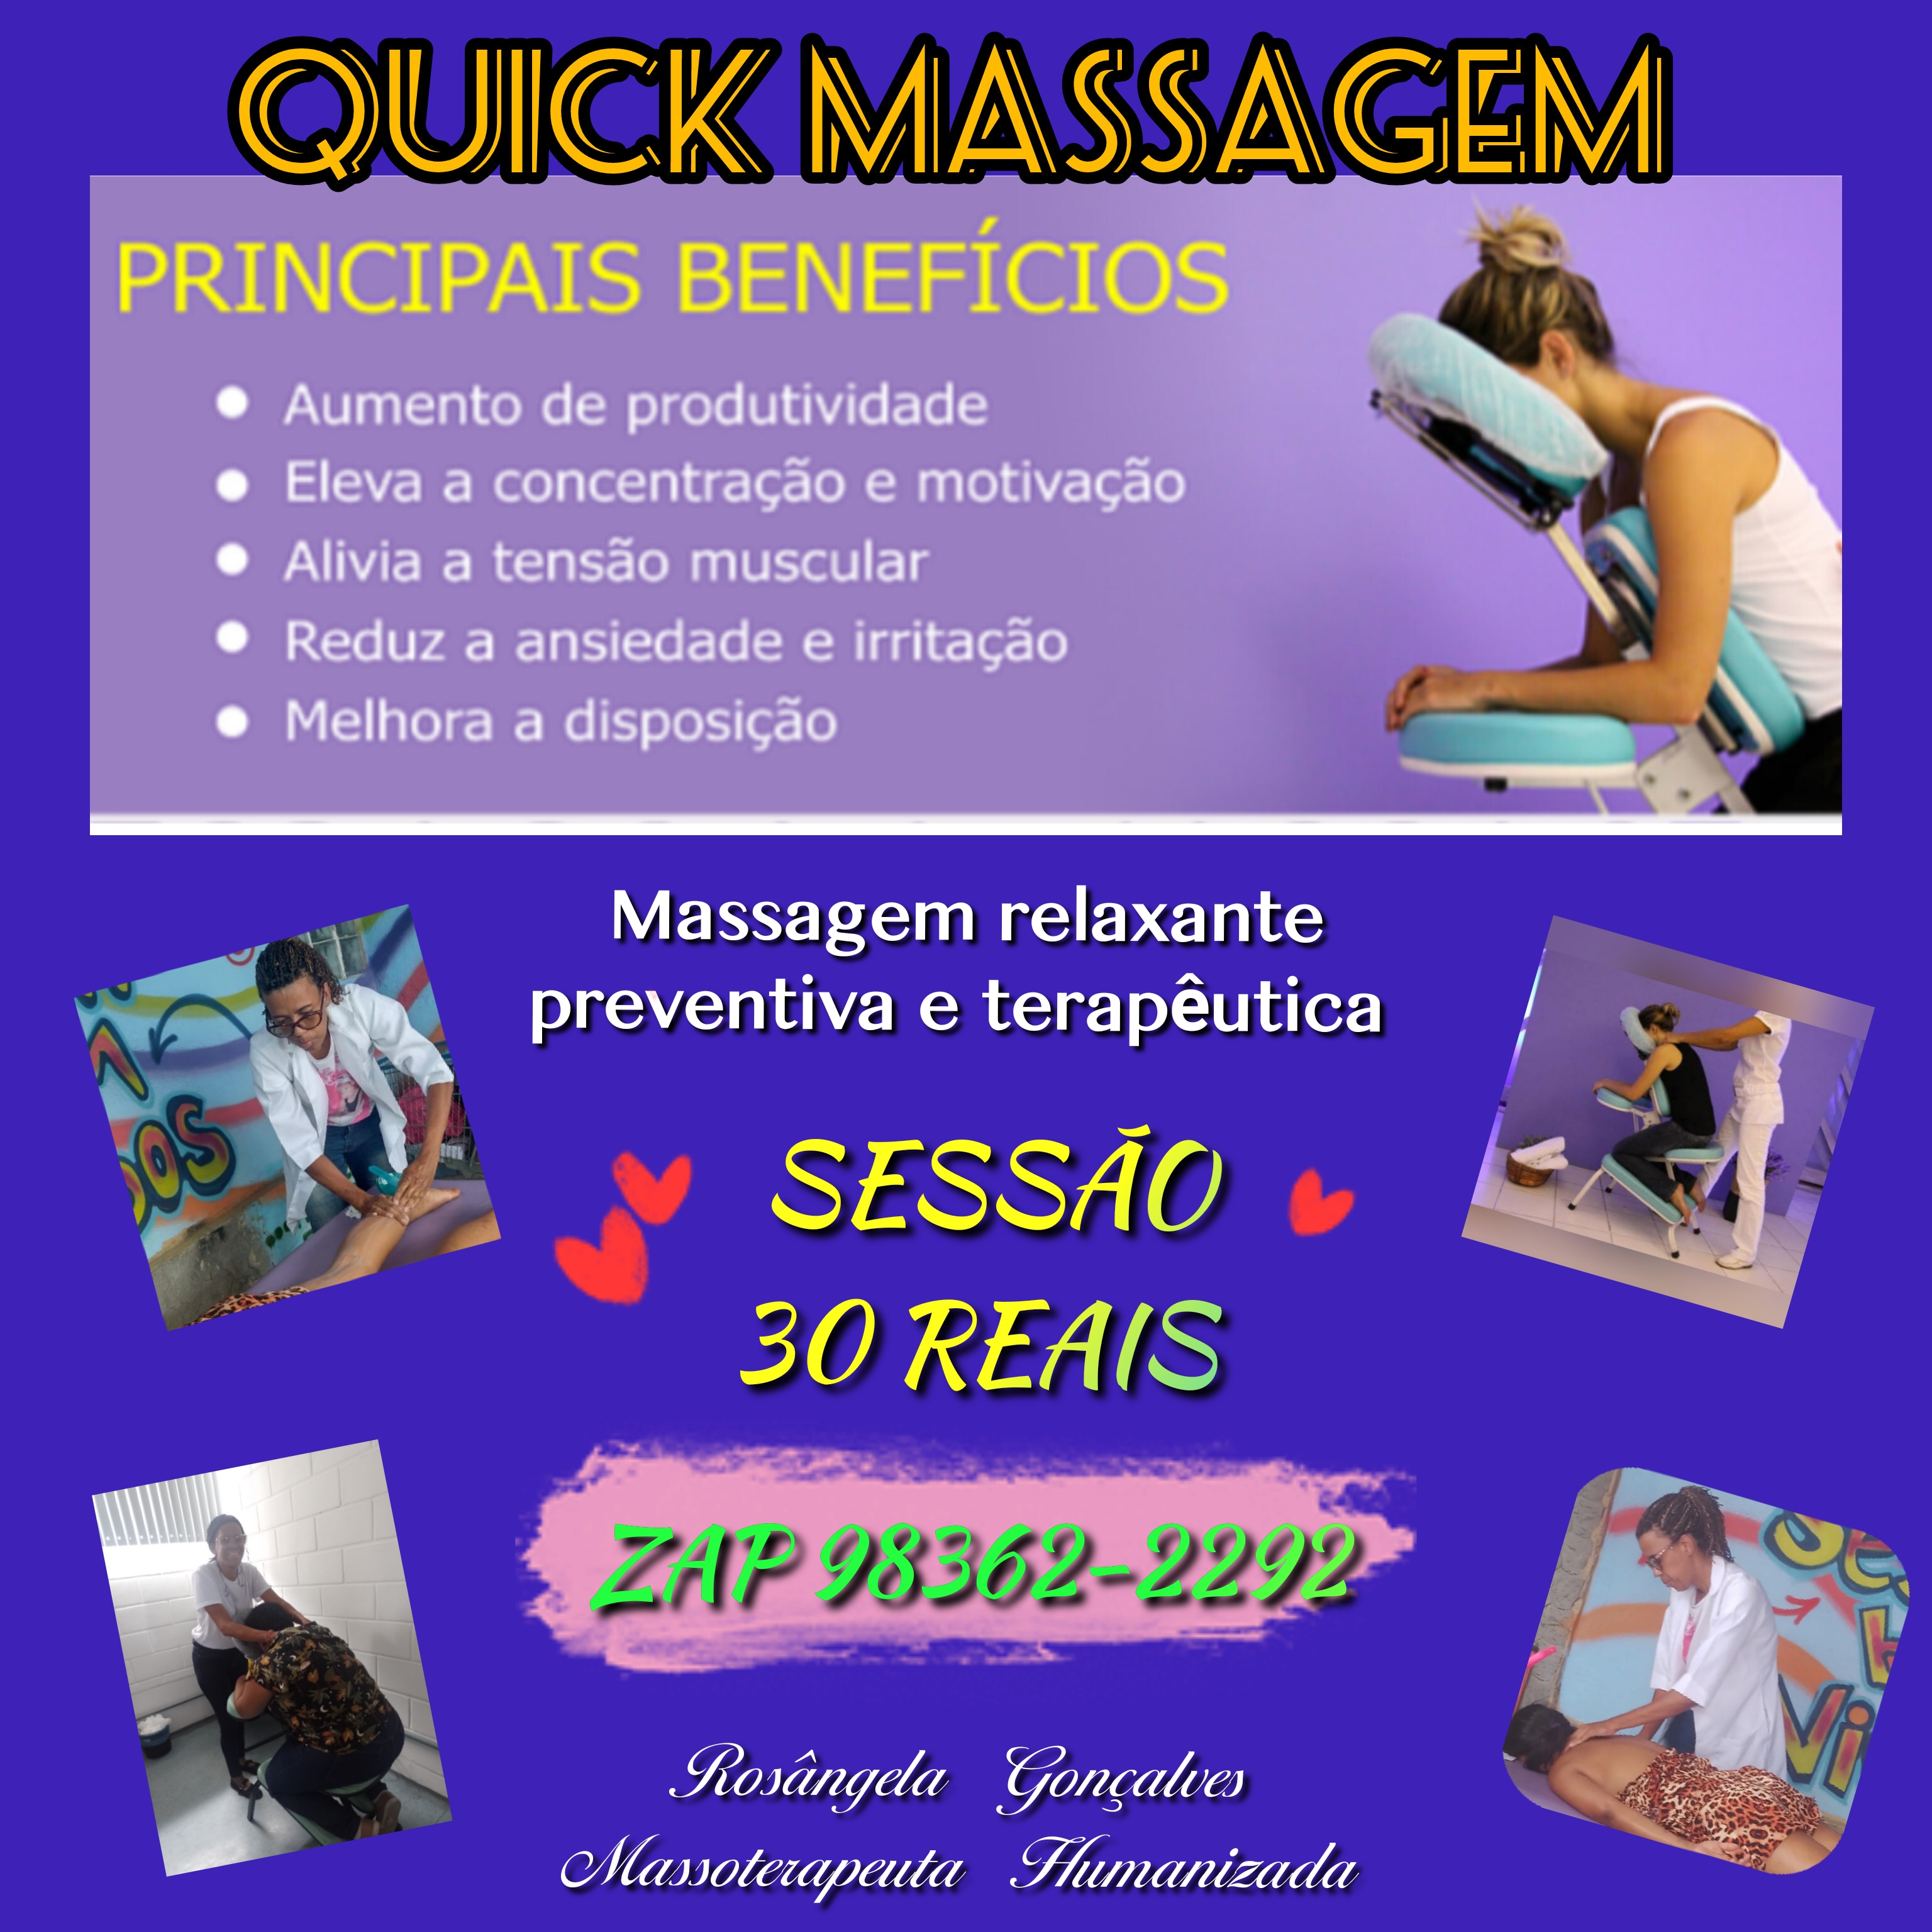 Massagem relaxante
preventiva e terapeéutica «

wv SESSAO «
30 REALS

 
 

AL

 

 

RAR Tee,
Need Sumnarnizada